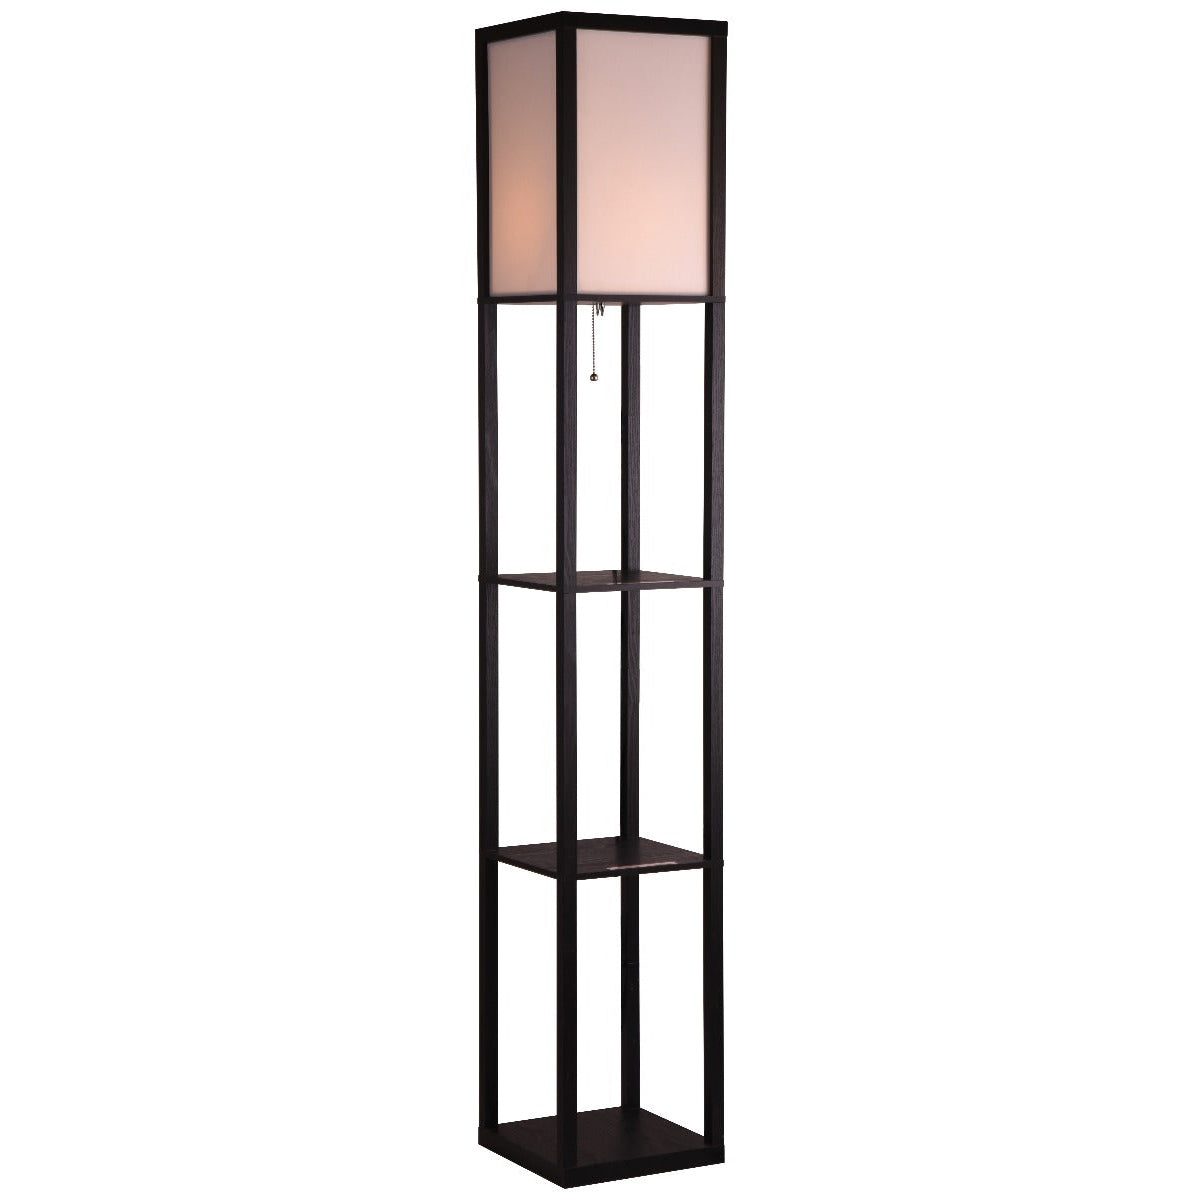 Blisk Floor Lamp with Open Box Shelves -1.6m - Notbrand